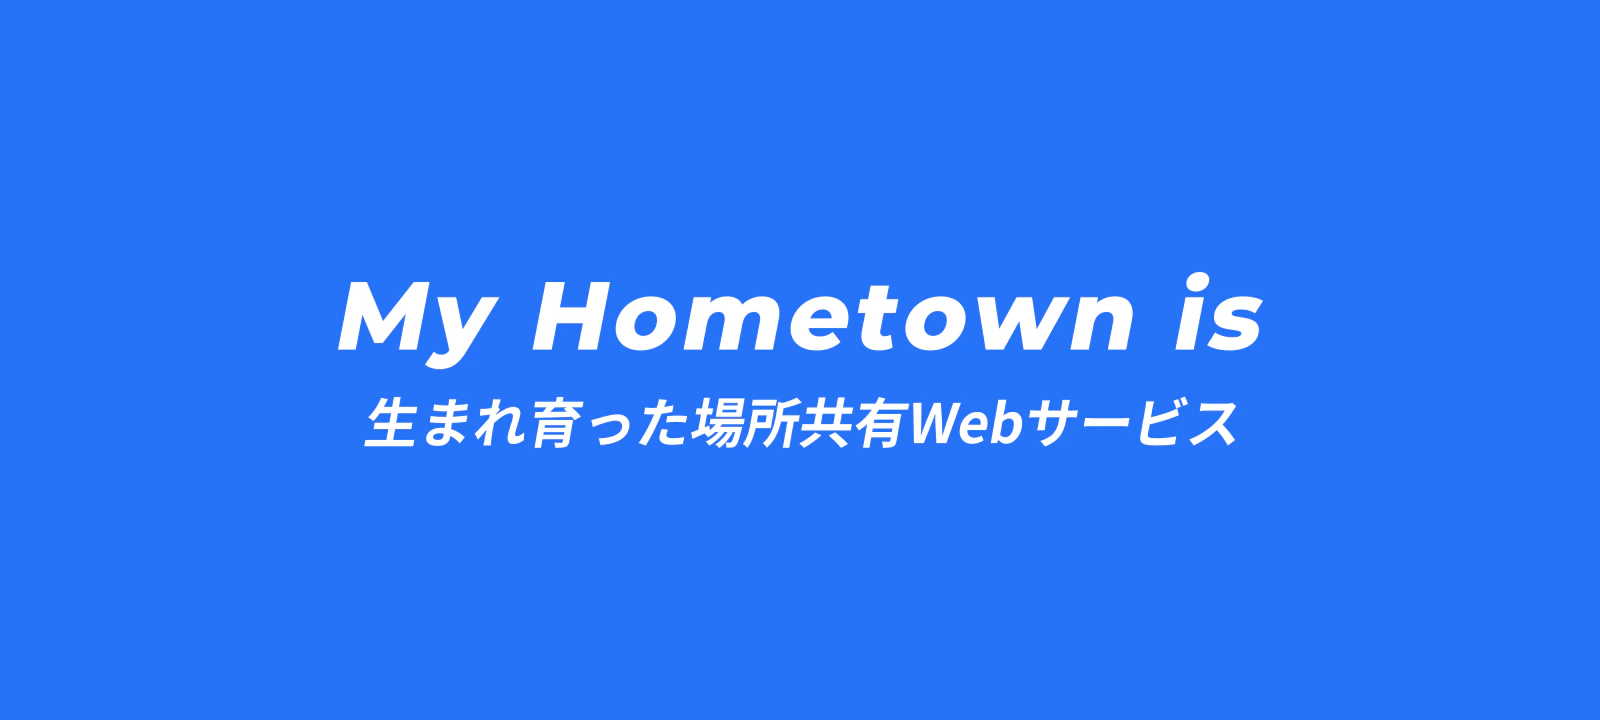 1週間でWebサービスを作るイベントで「My Hometown is」を開発しました